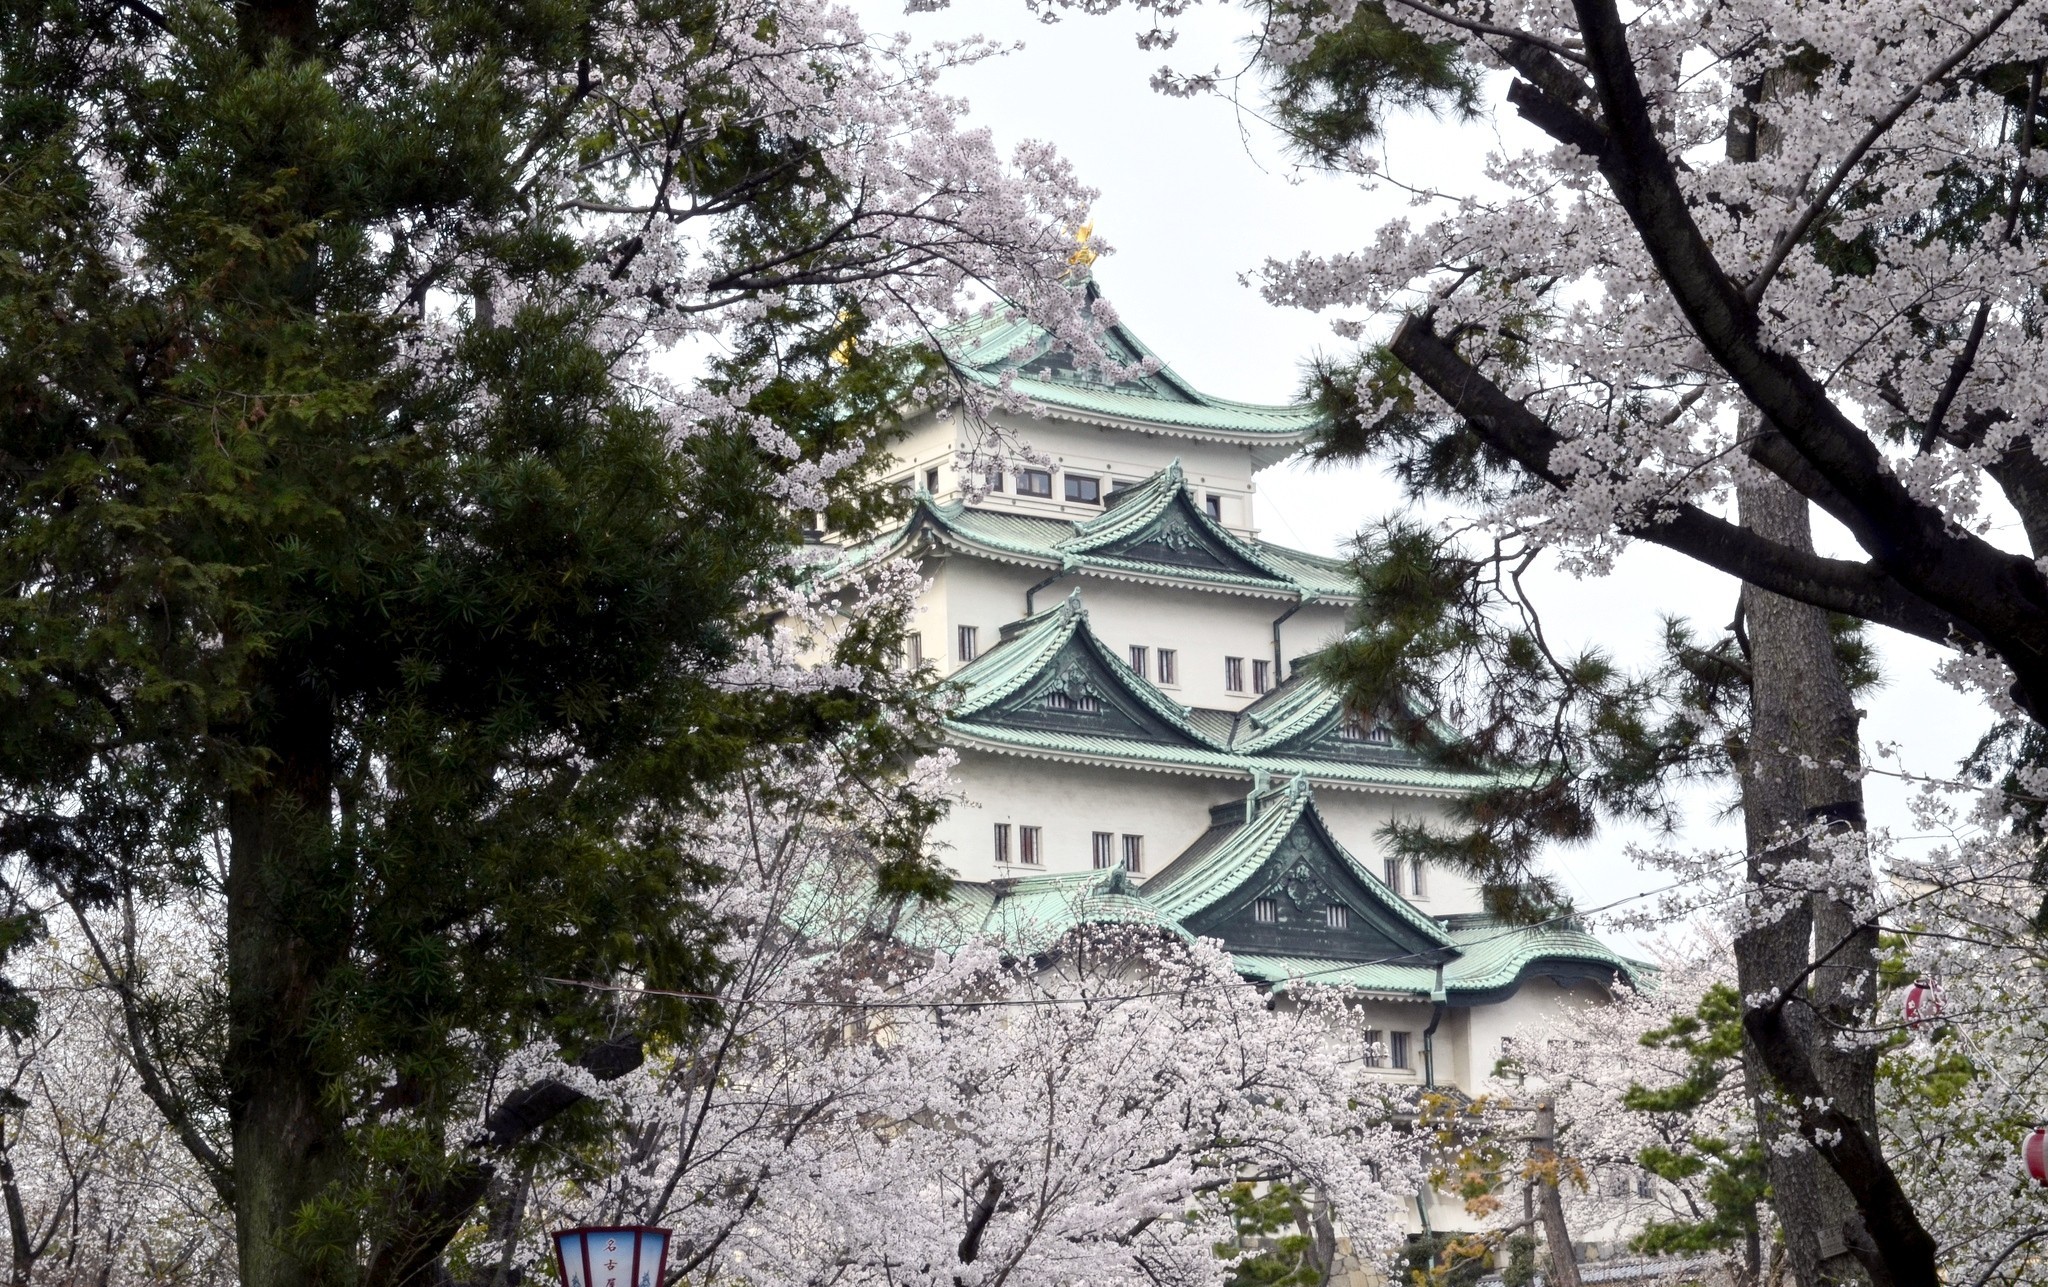 osaka castle, sakura blossom, man made, japan, spring, castles